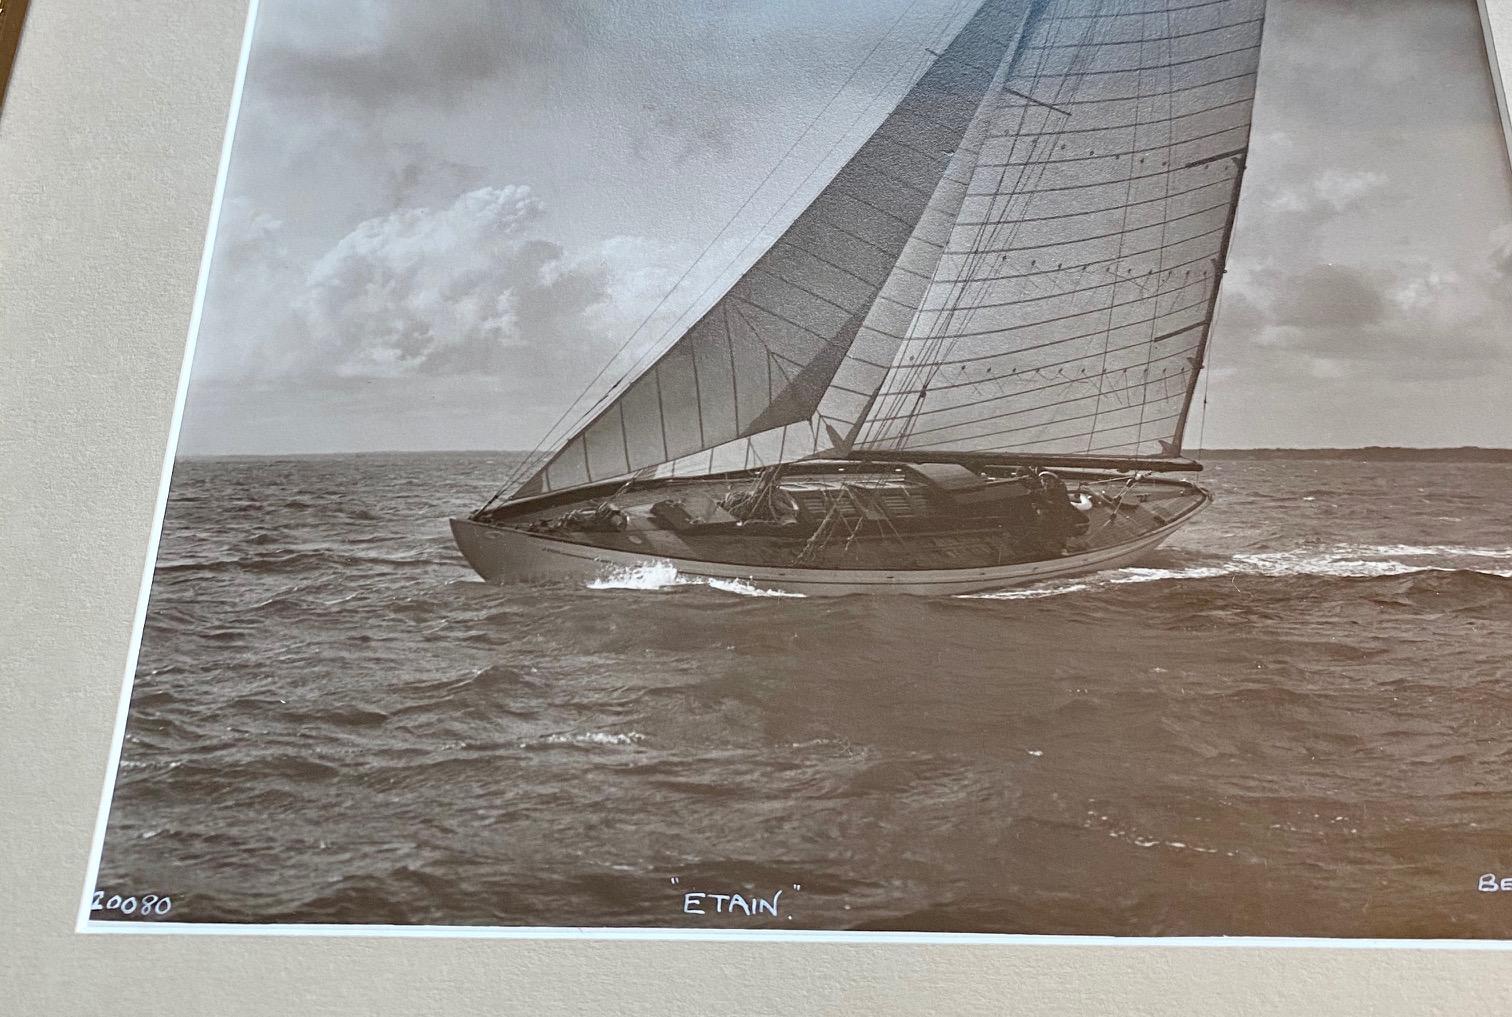 Original Photograph of the Racing Yacht 